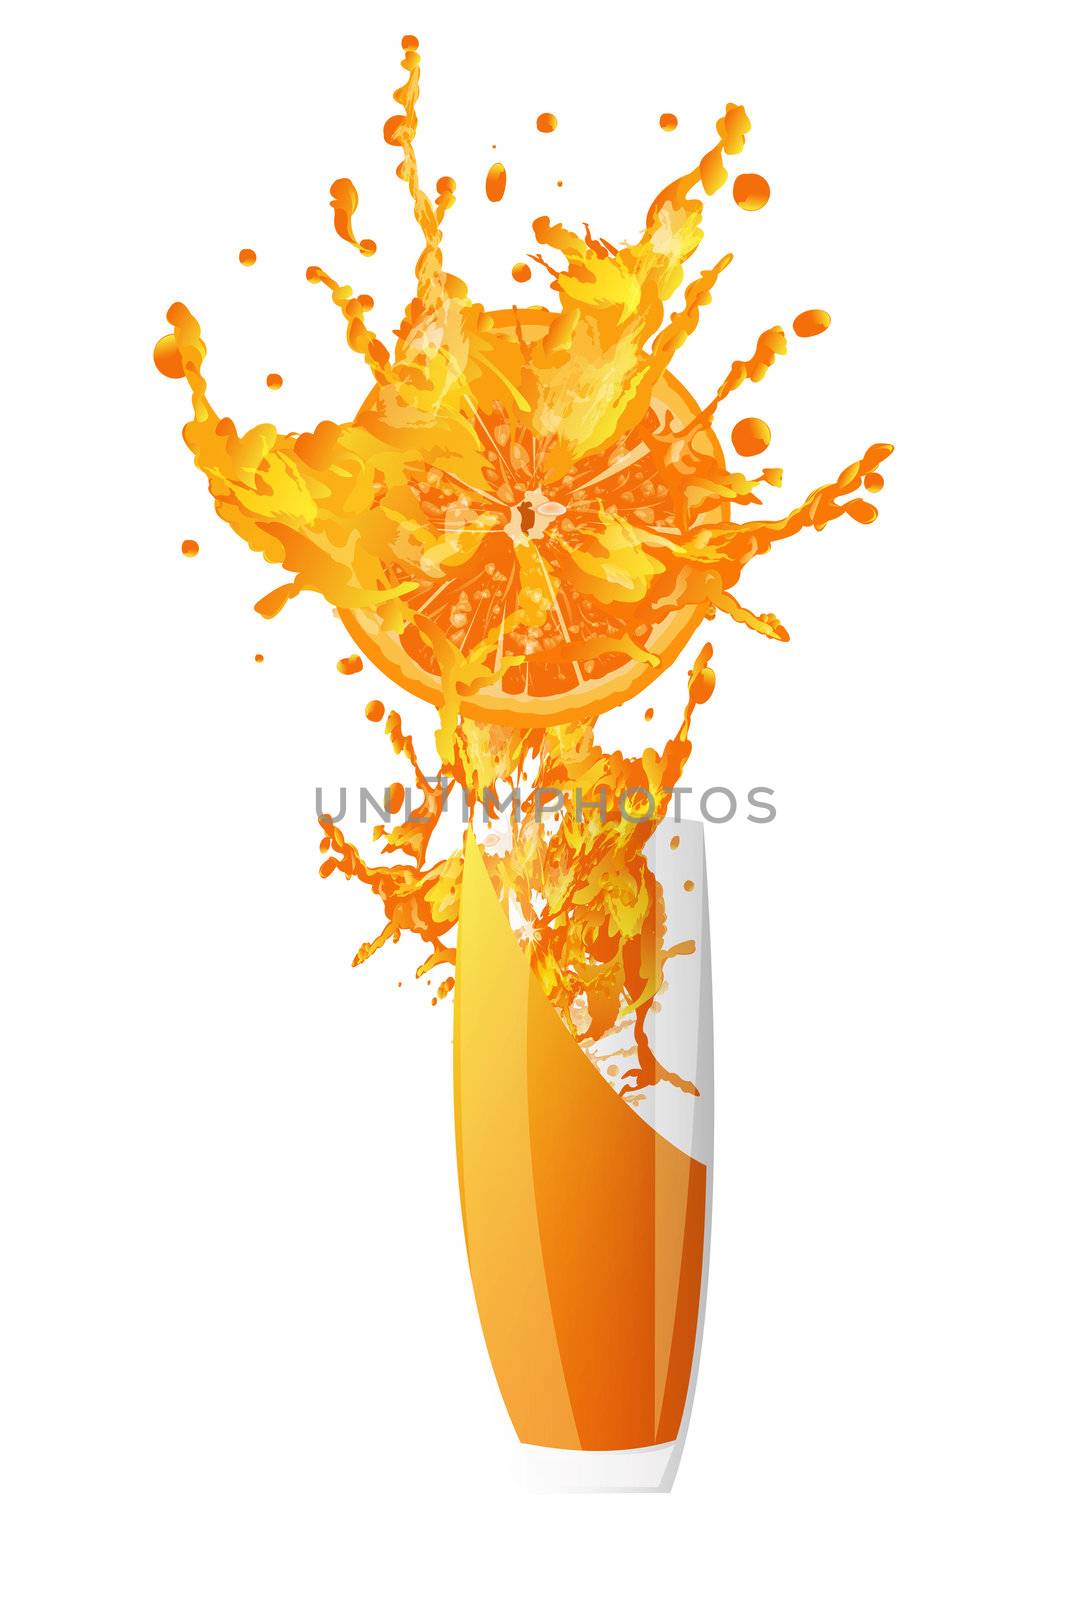 Fresh juice orange on a white background